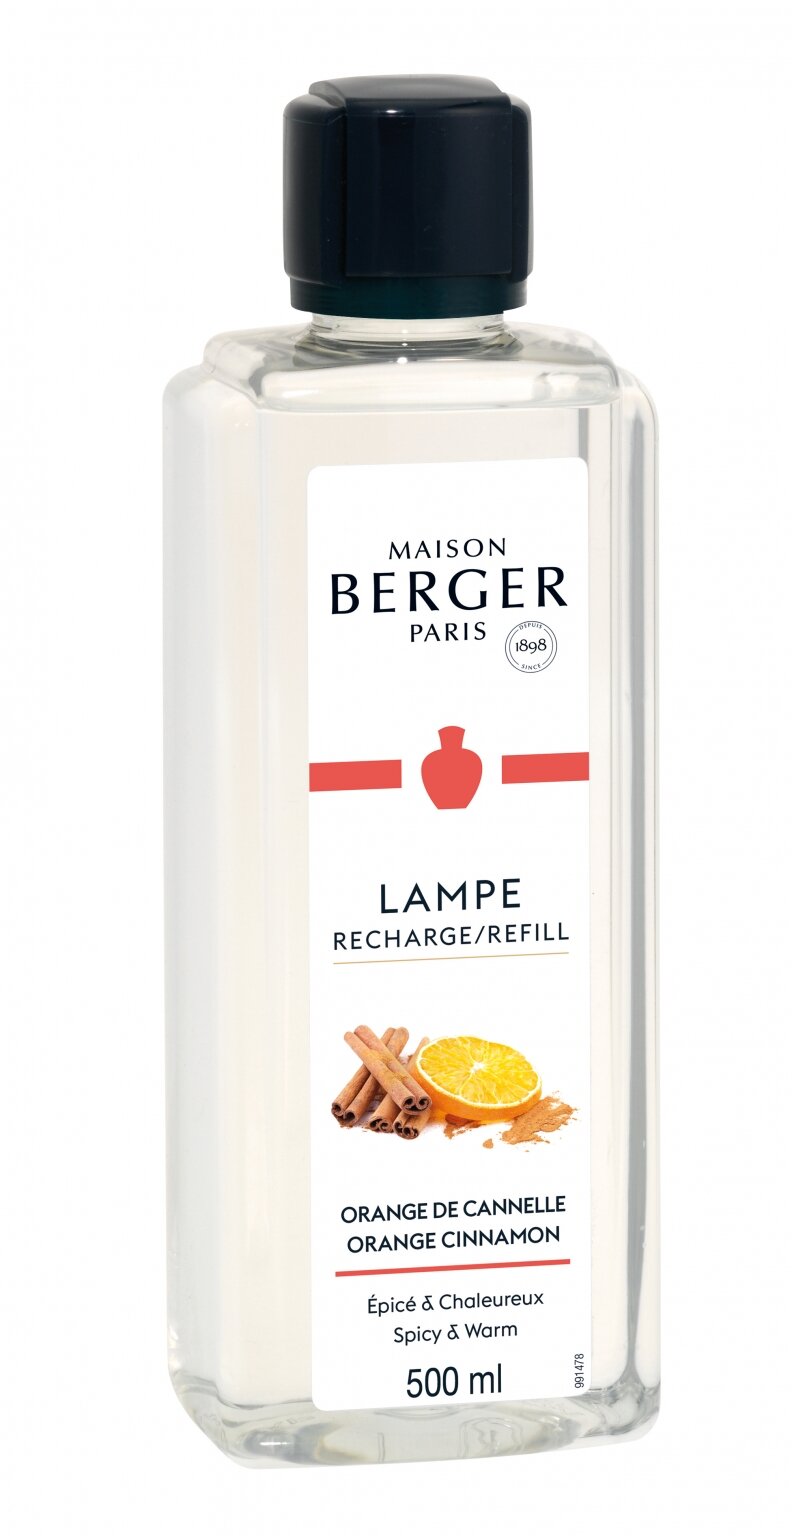 volume registreren traagheid Lampe Berger navulling Orange Cinnamon bestellen | Heerlijke geur in huis!  - De Tuinwinkel online tuincentrum - GroenRijk Rijswijk